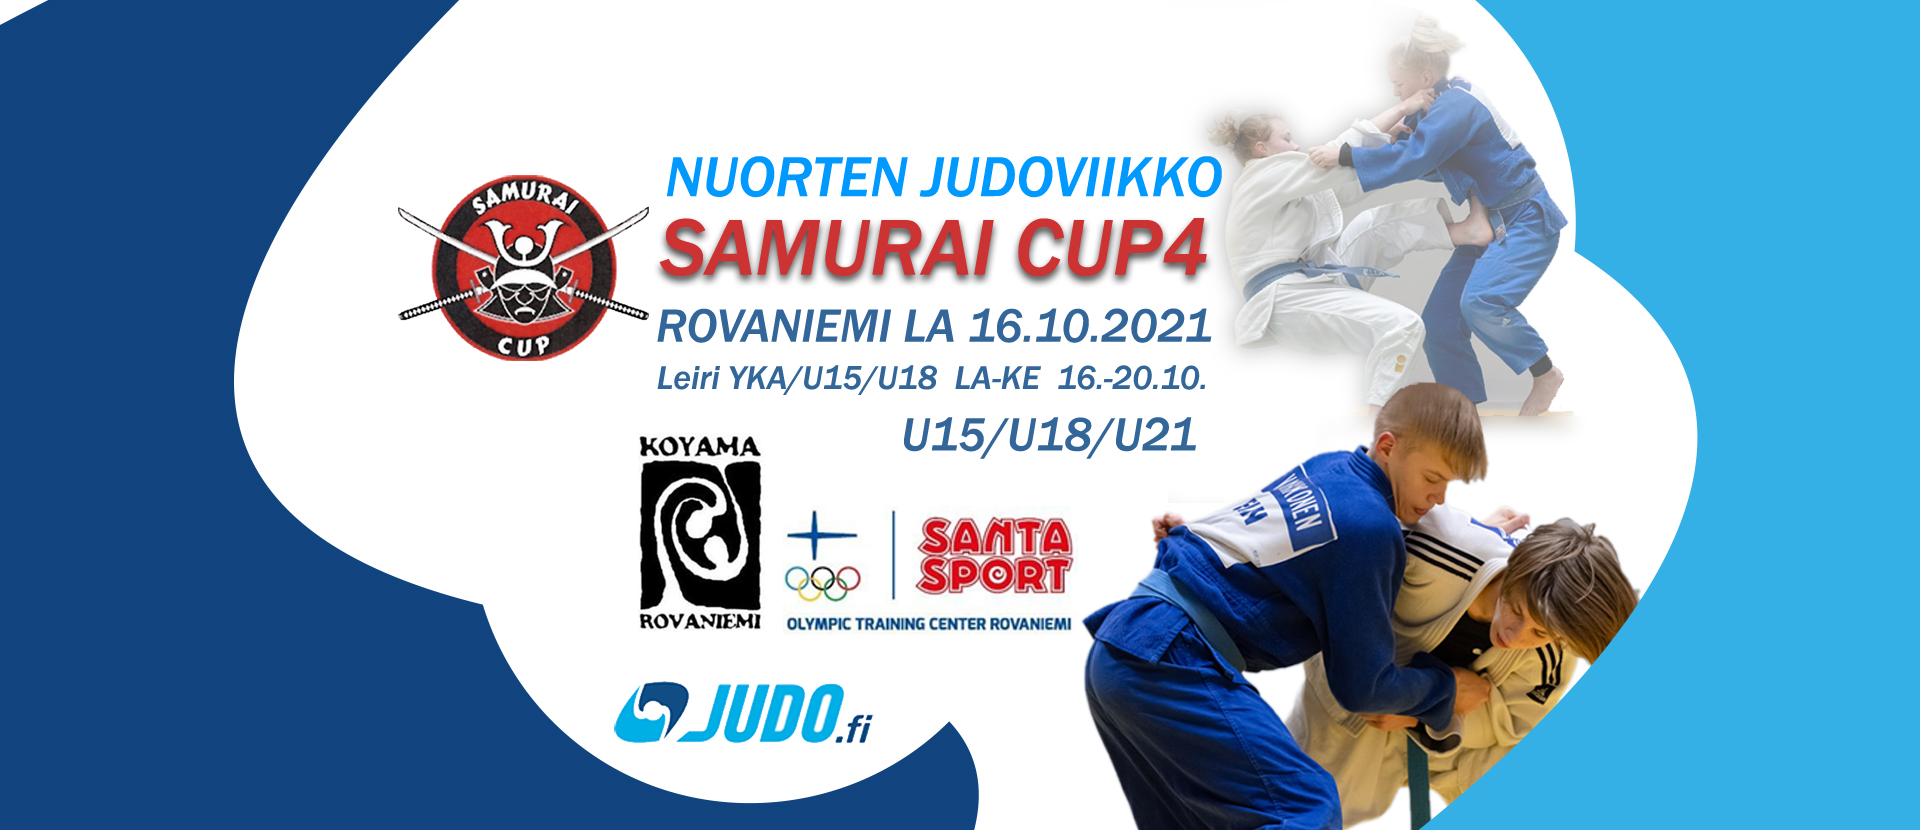 Samurai cup 4 ja nuorten judoviikko